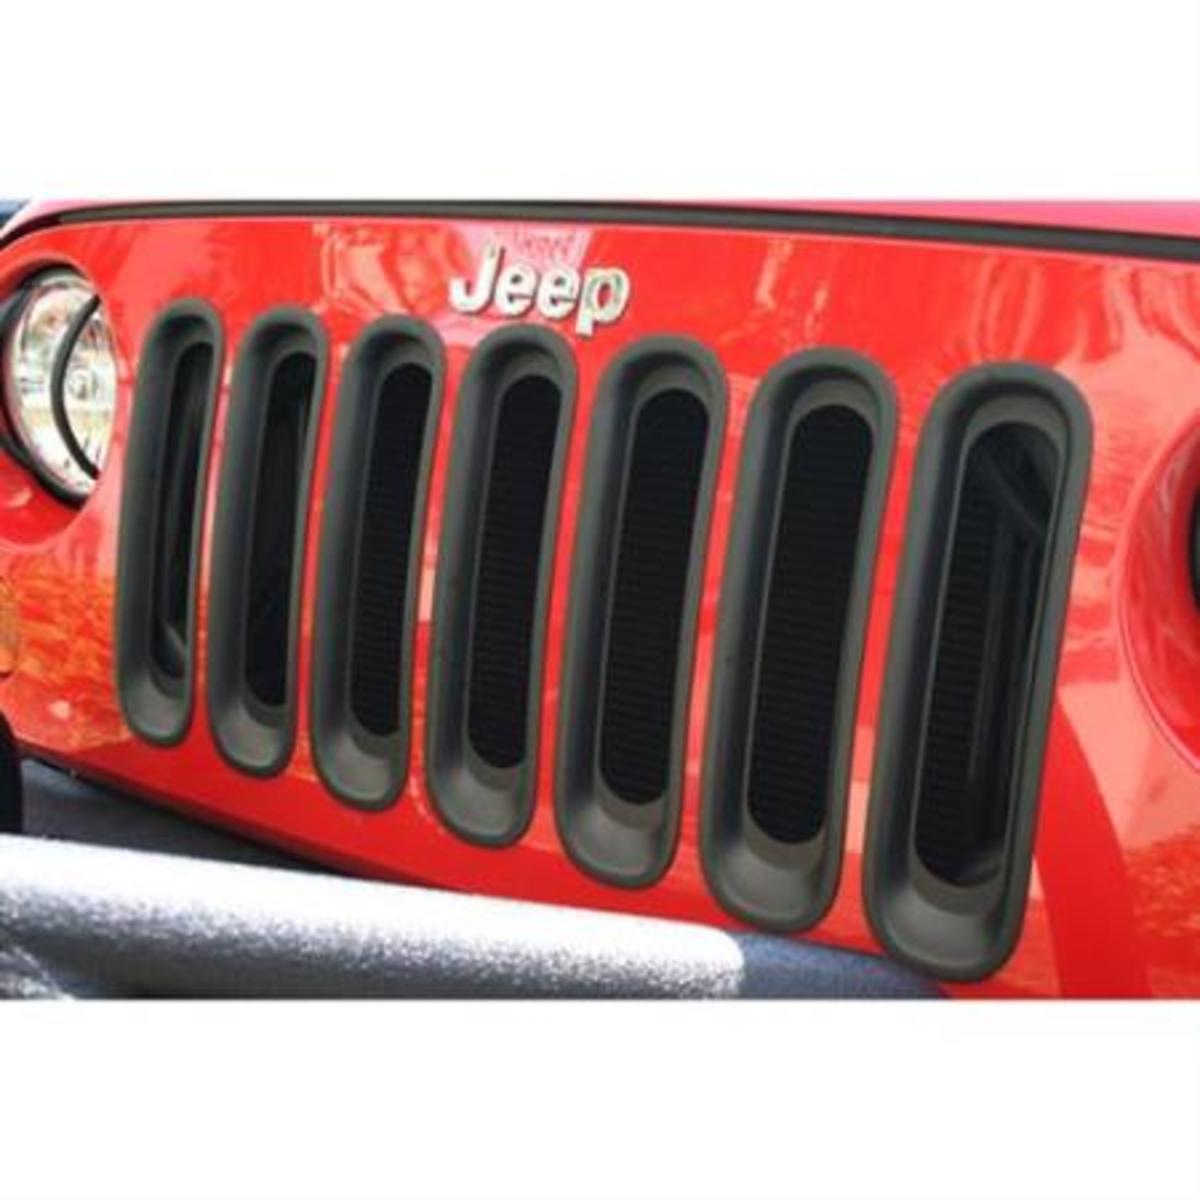 Subito - ITALIA 4X4 - Smittybilt Porta Ruota di scorta JEEP Wrangler JK -  Accessori Auto In vendita a Torino